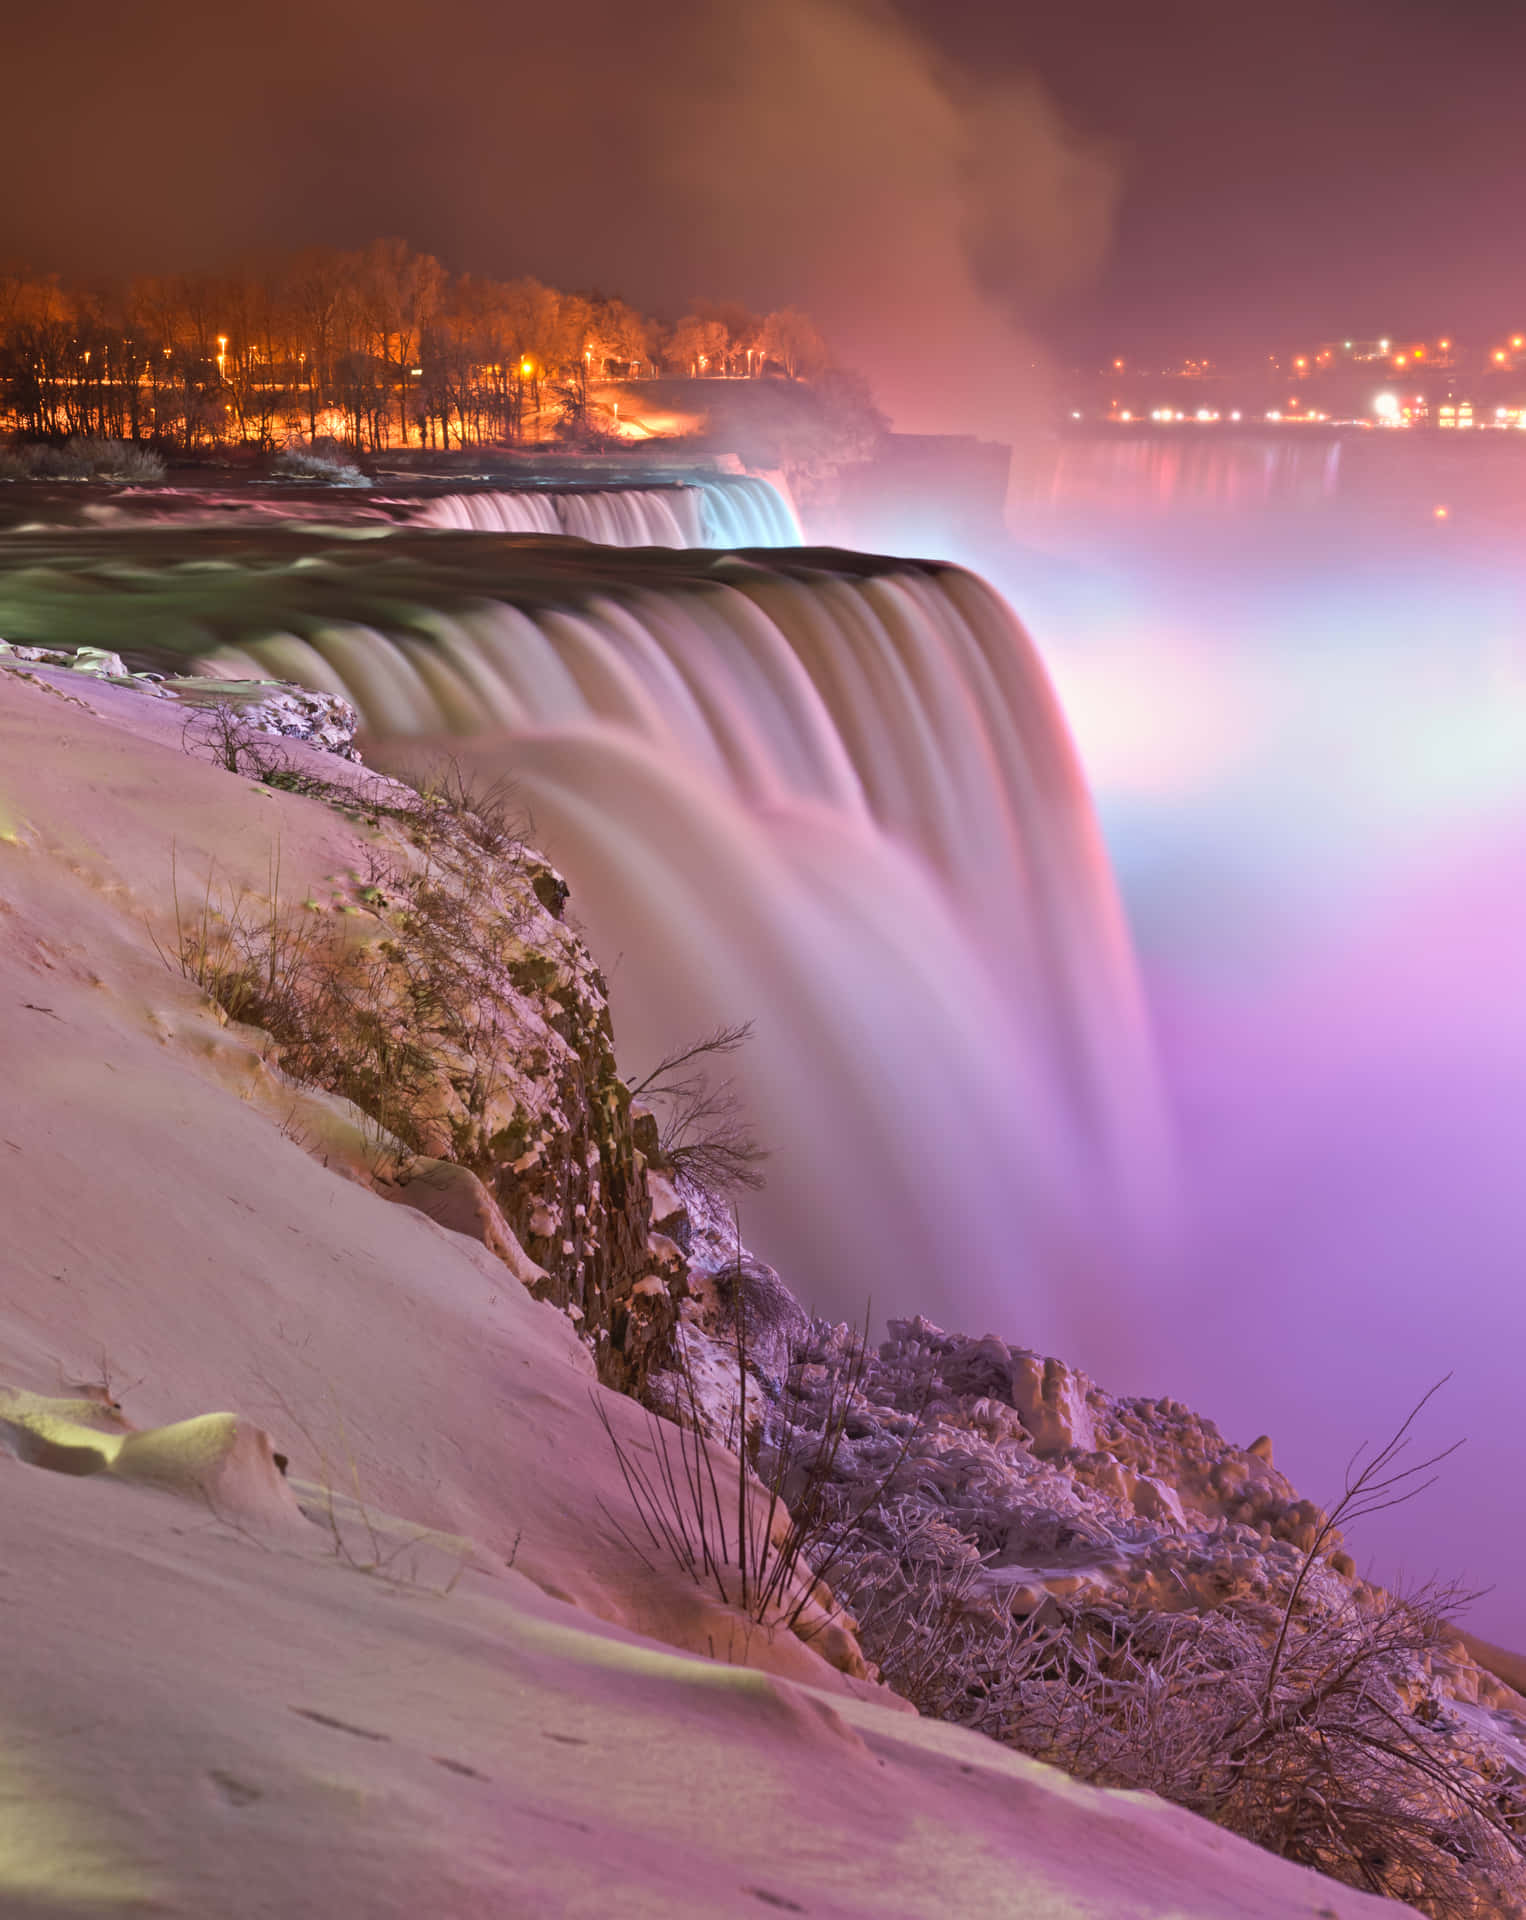 "The Spectacular Views of Niagara Falls"